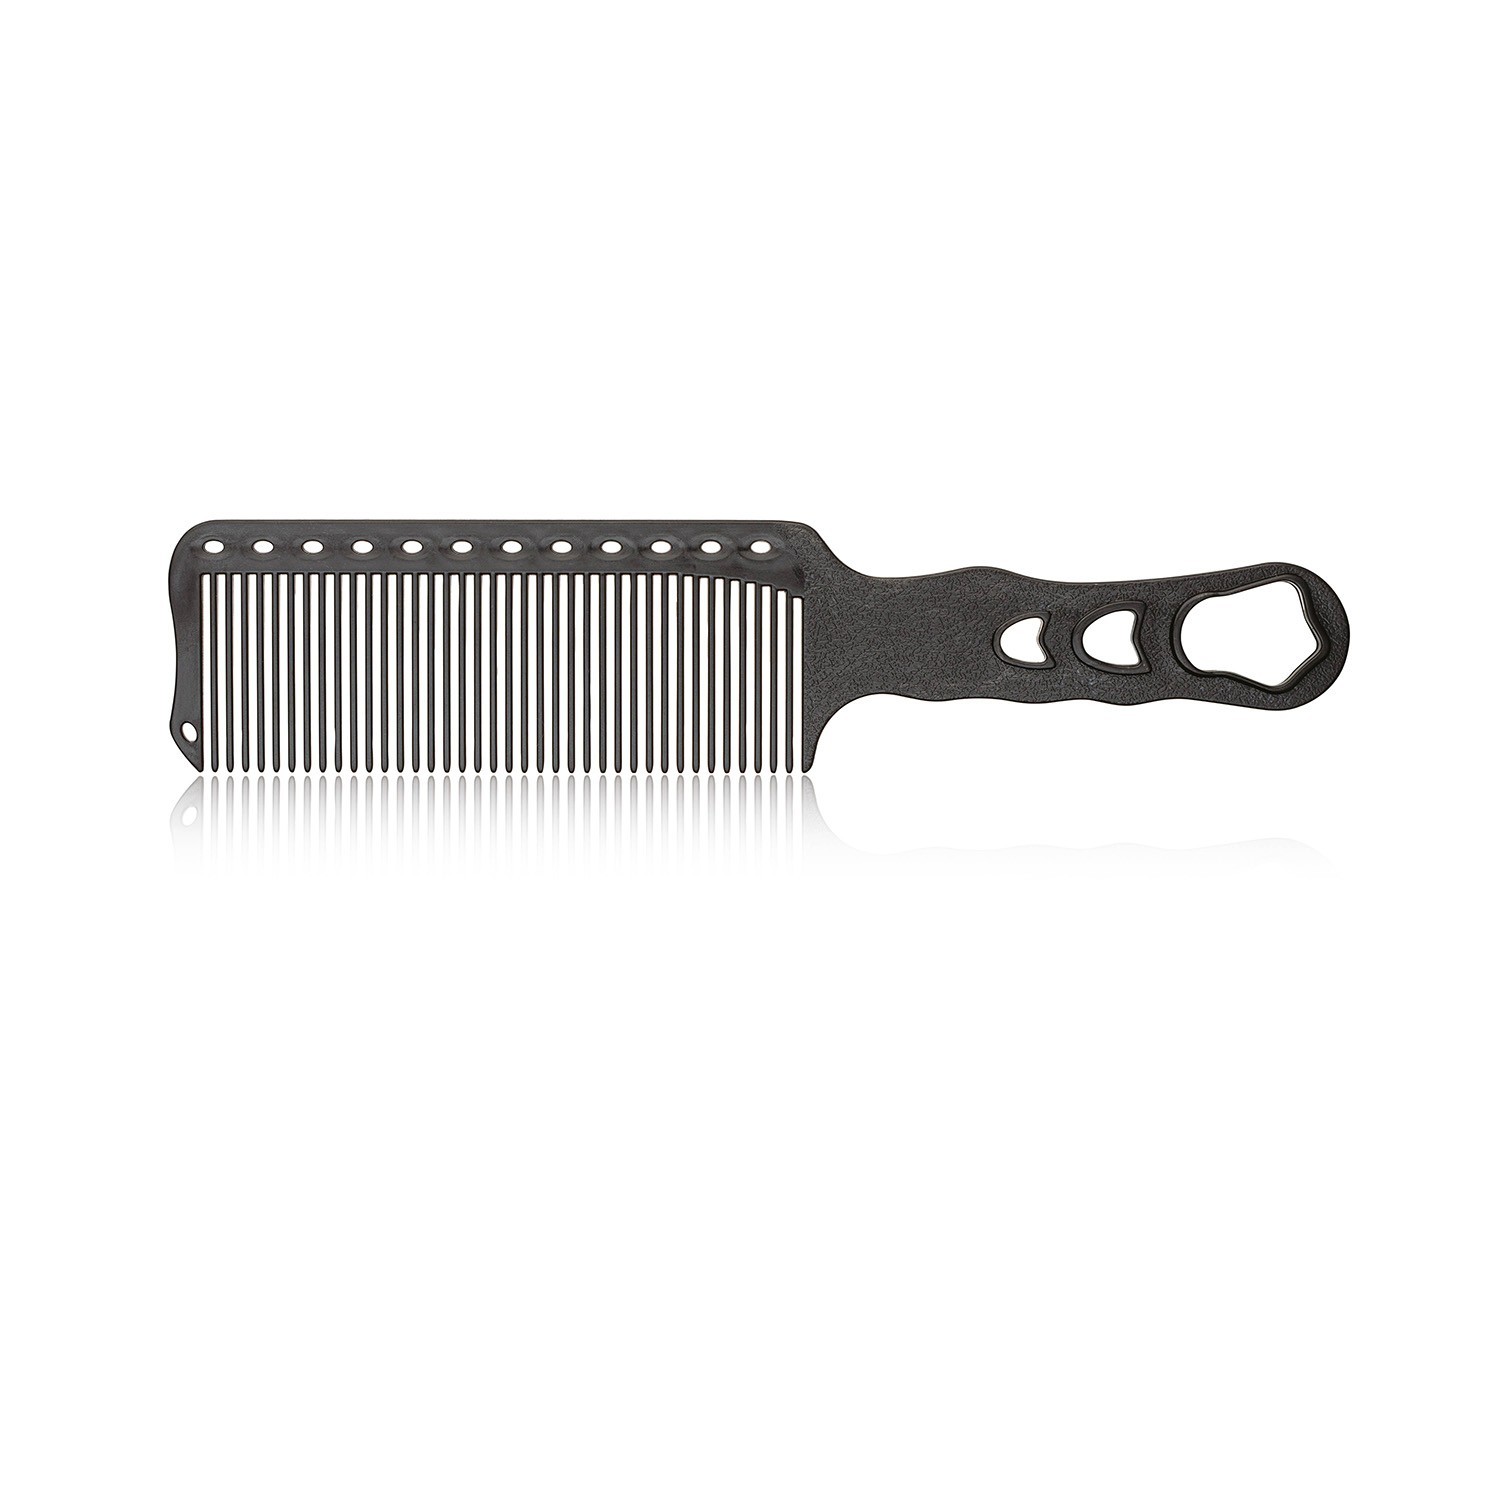 Xanitlia Pro Comb Cut 23.5 cm.